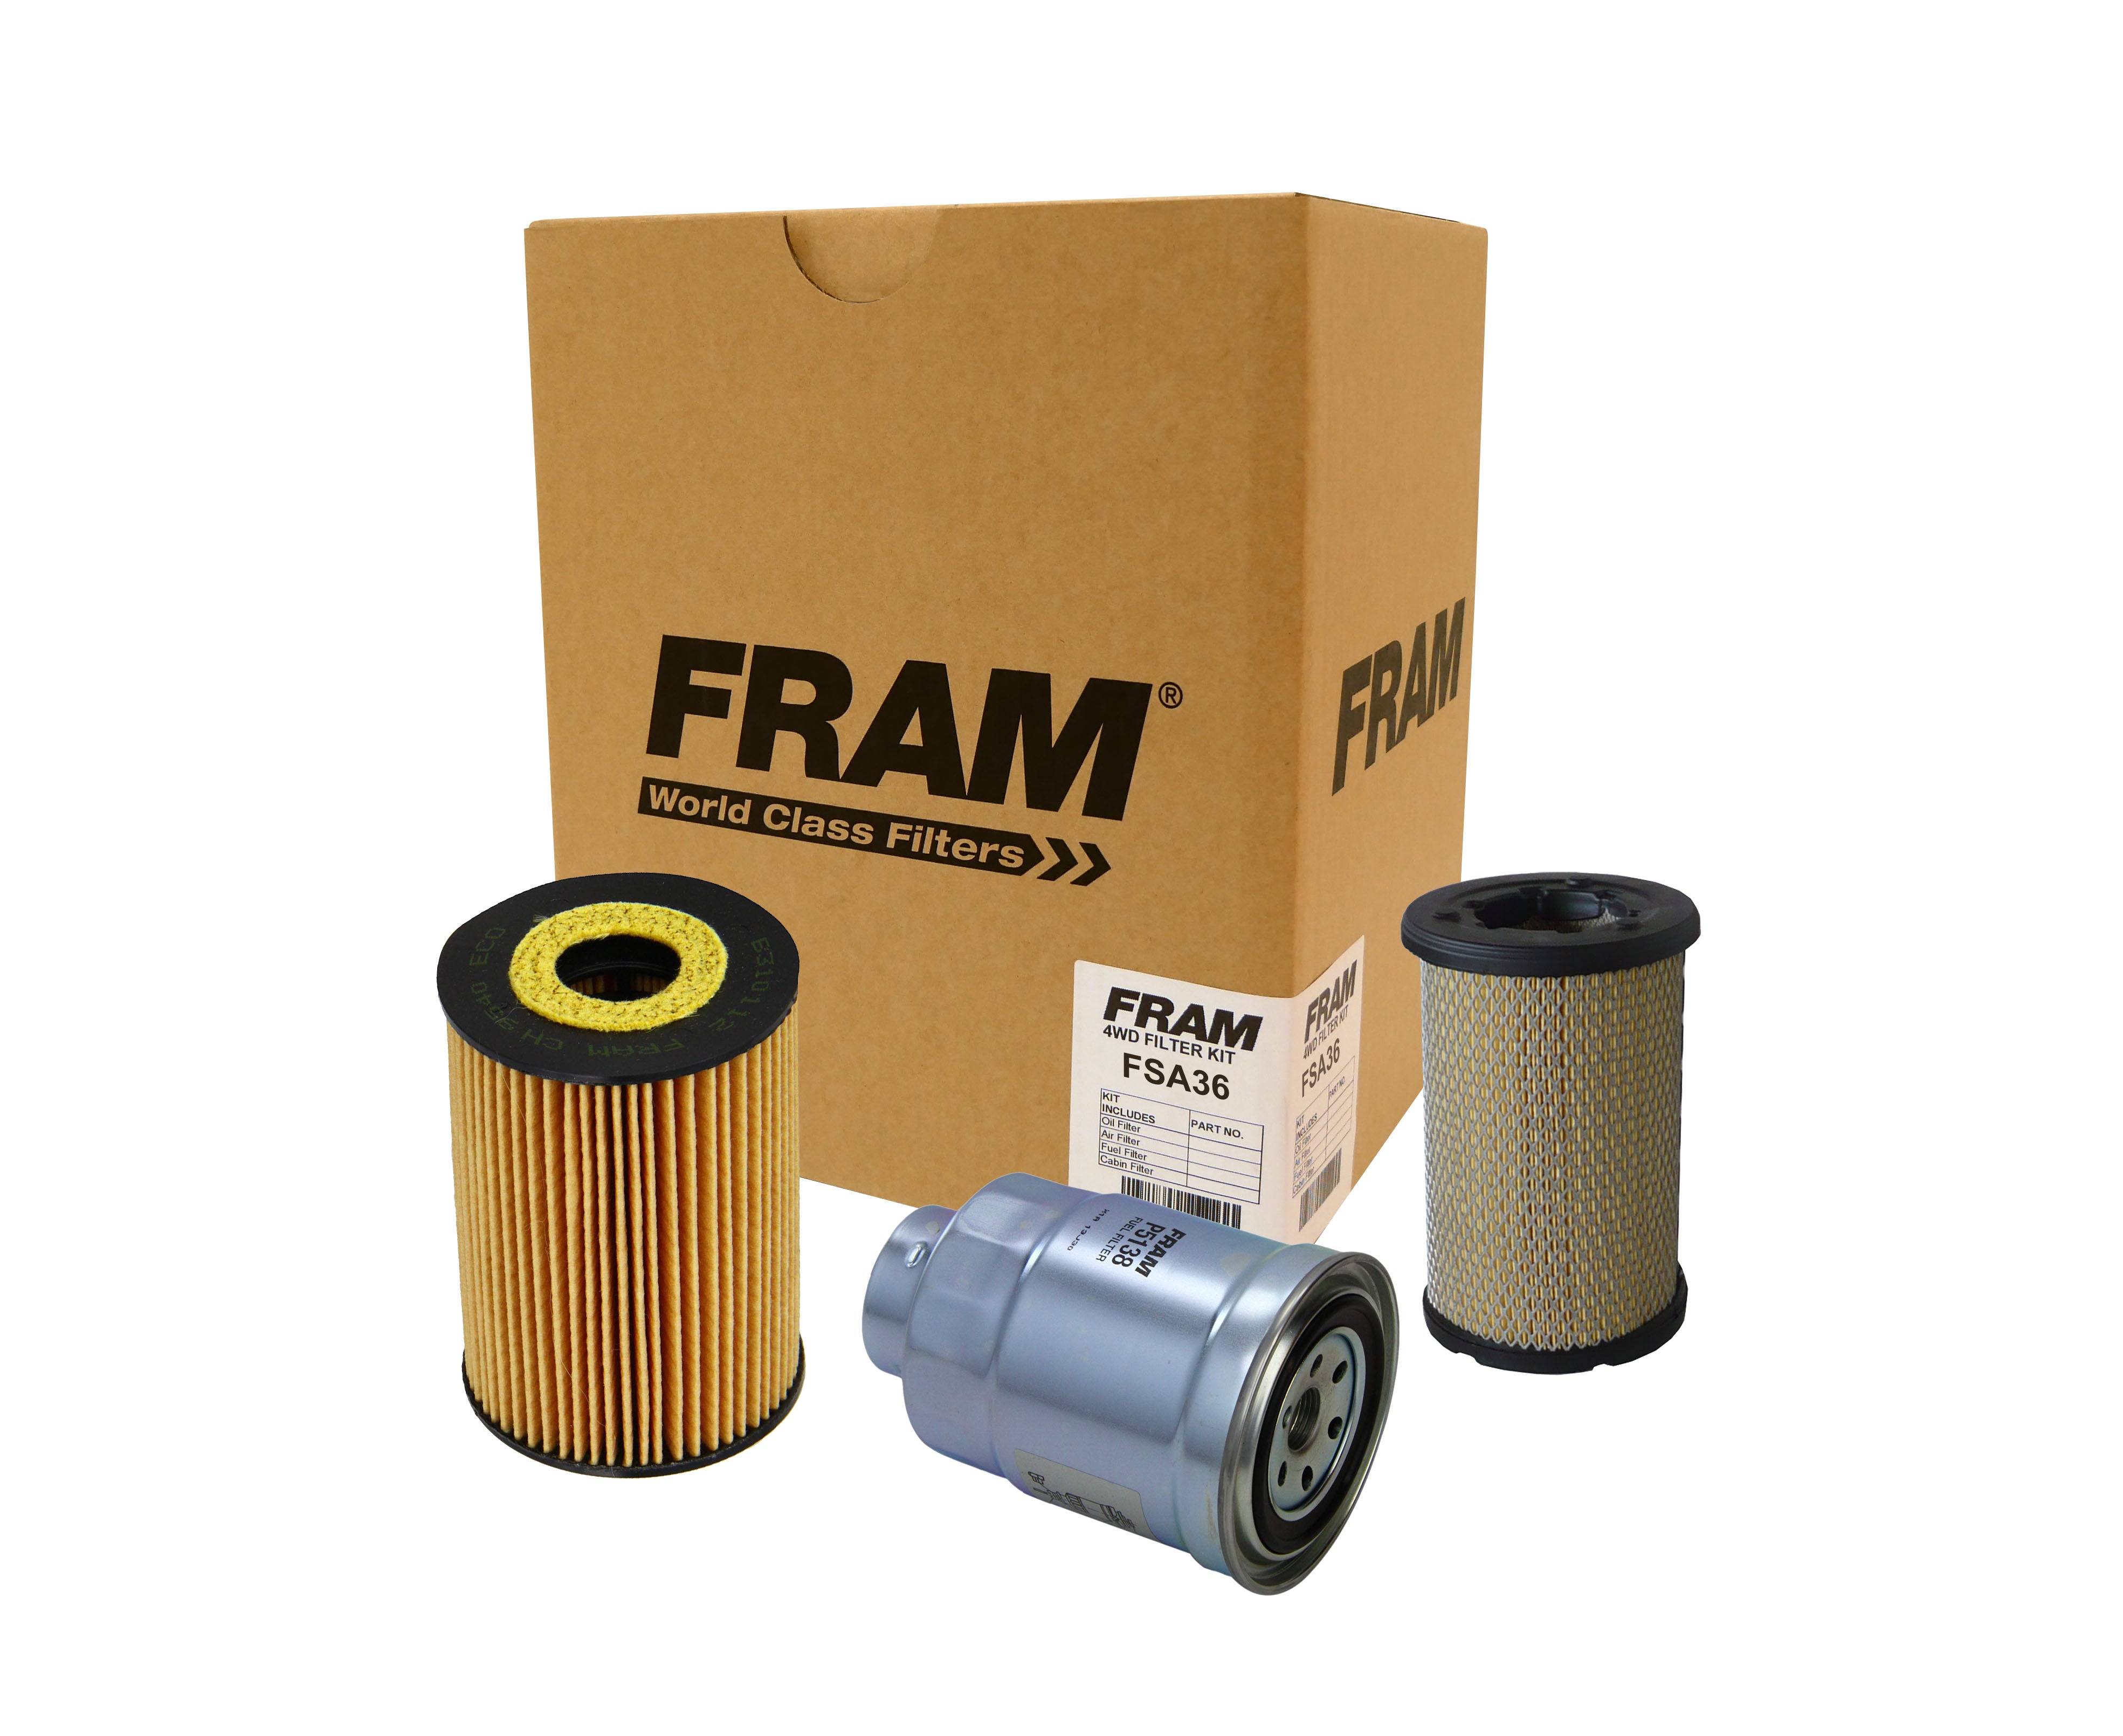 FRAM 4wd Filter Kit for Nissan Navara D22 (ZD30) | FRAM